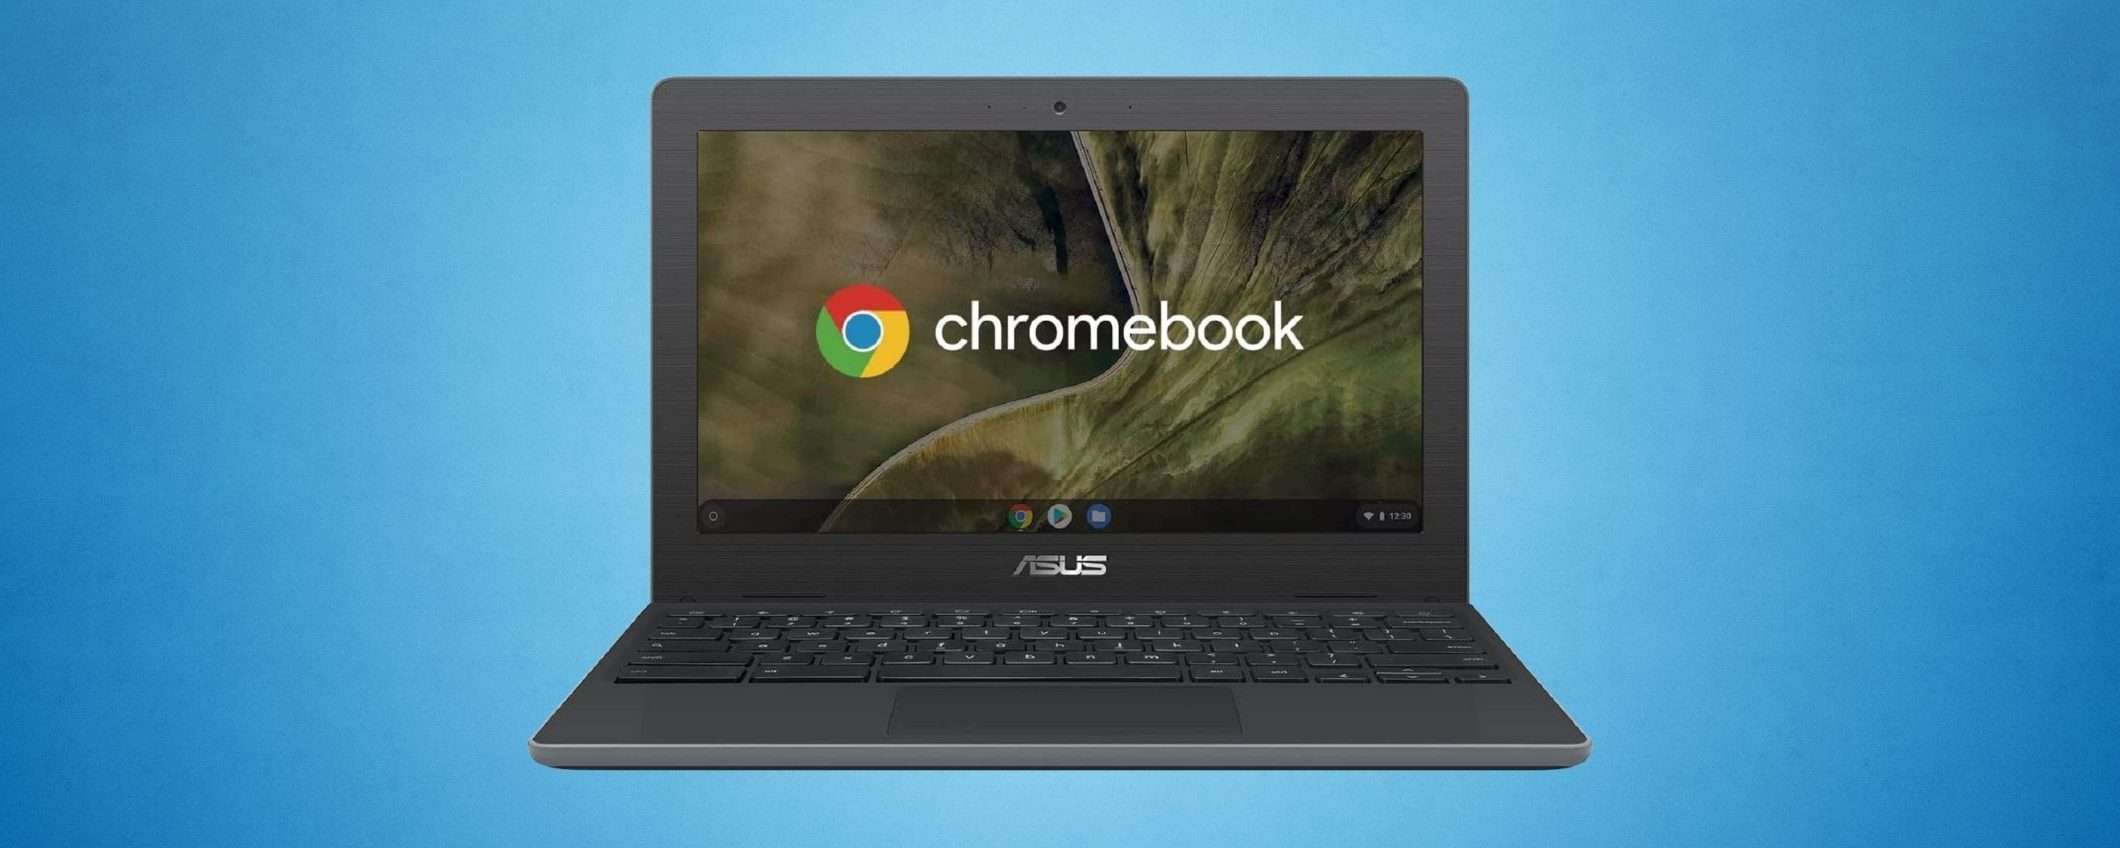 Piccolo il Chromebook, grande lo SCONTO (-100€)